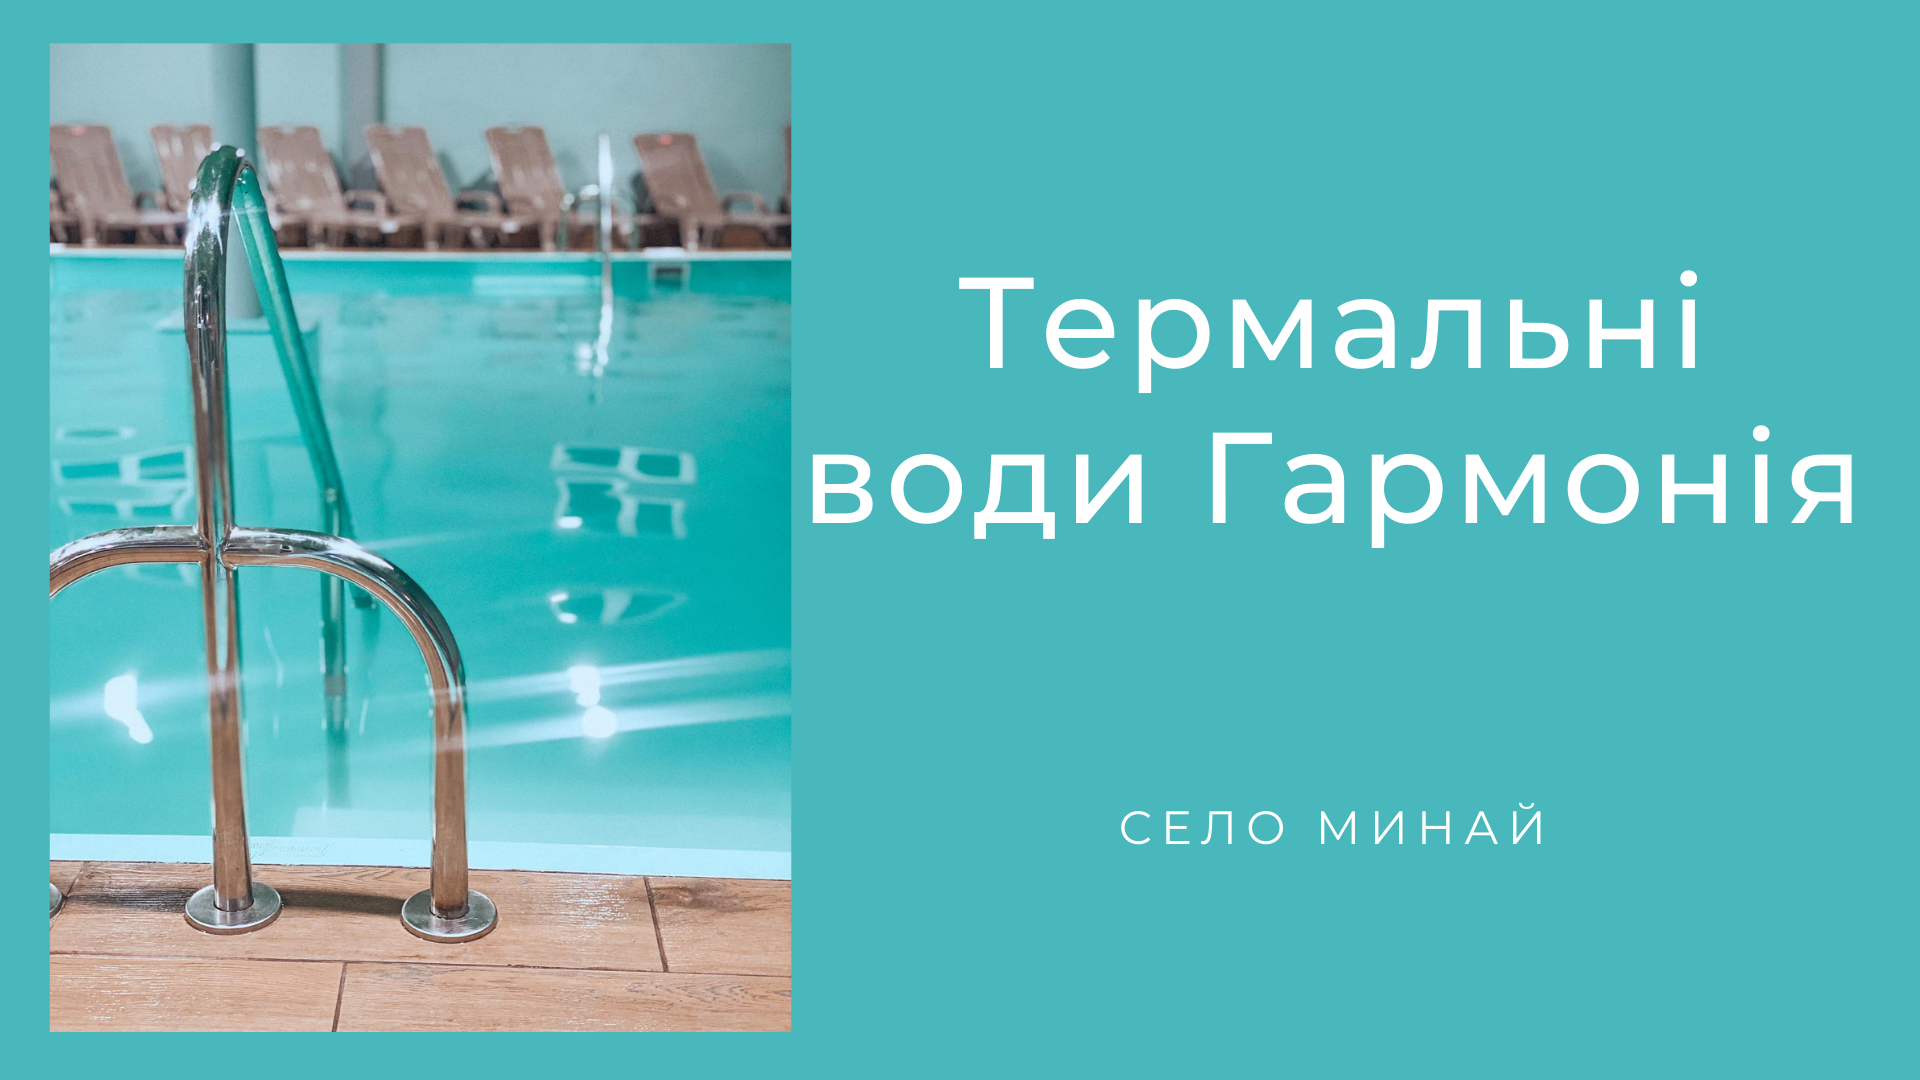 Термальні басейни Гармонія села Минай відновили роботу, сучасний лікувально-профілактичний заклад та медичний центр, з термальними водами під Ужгородом.